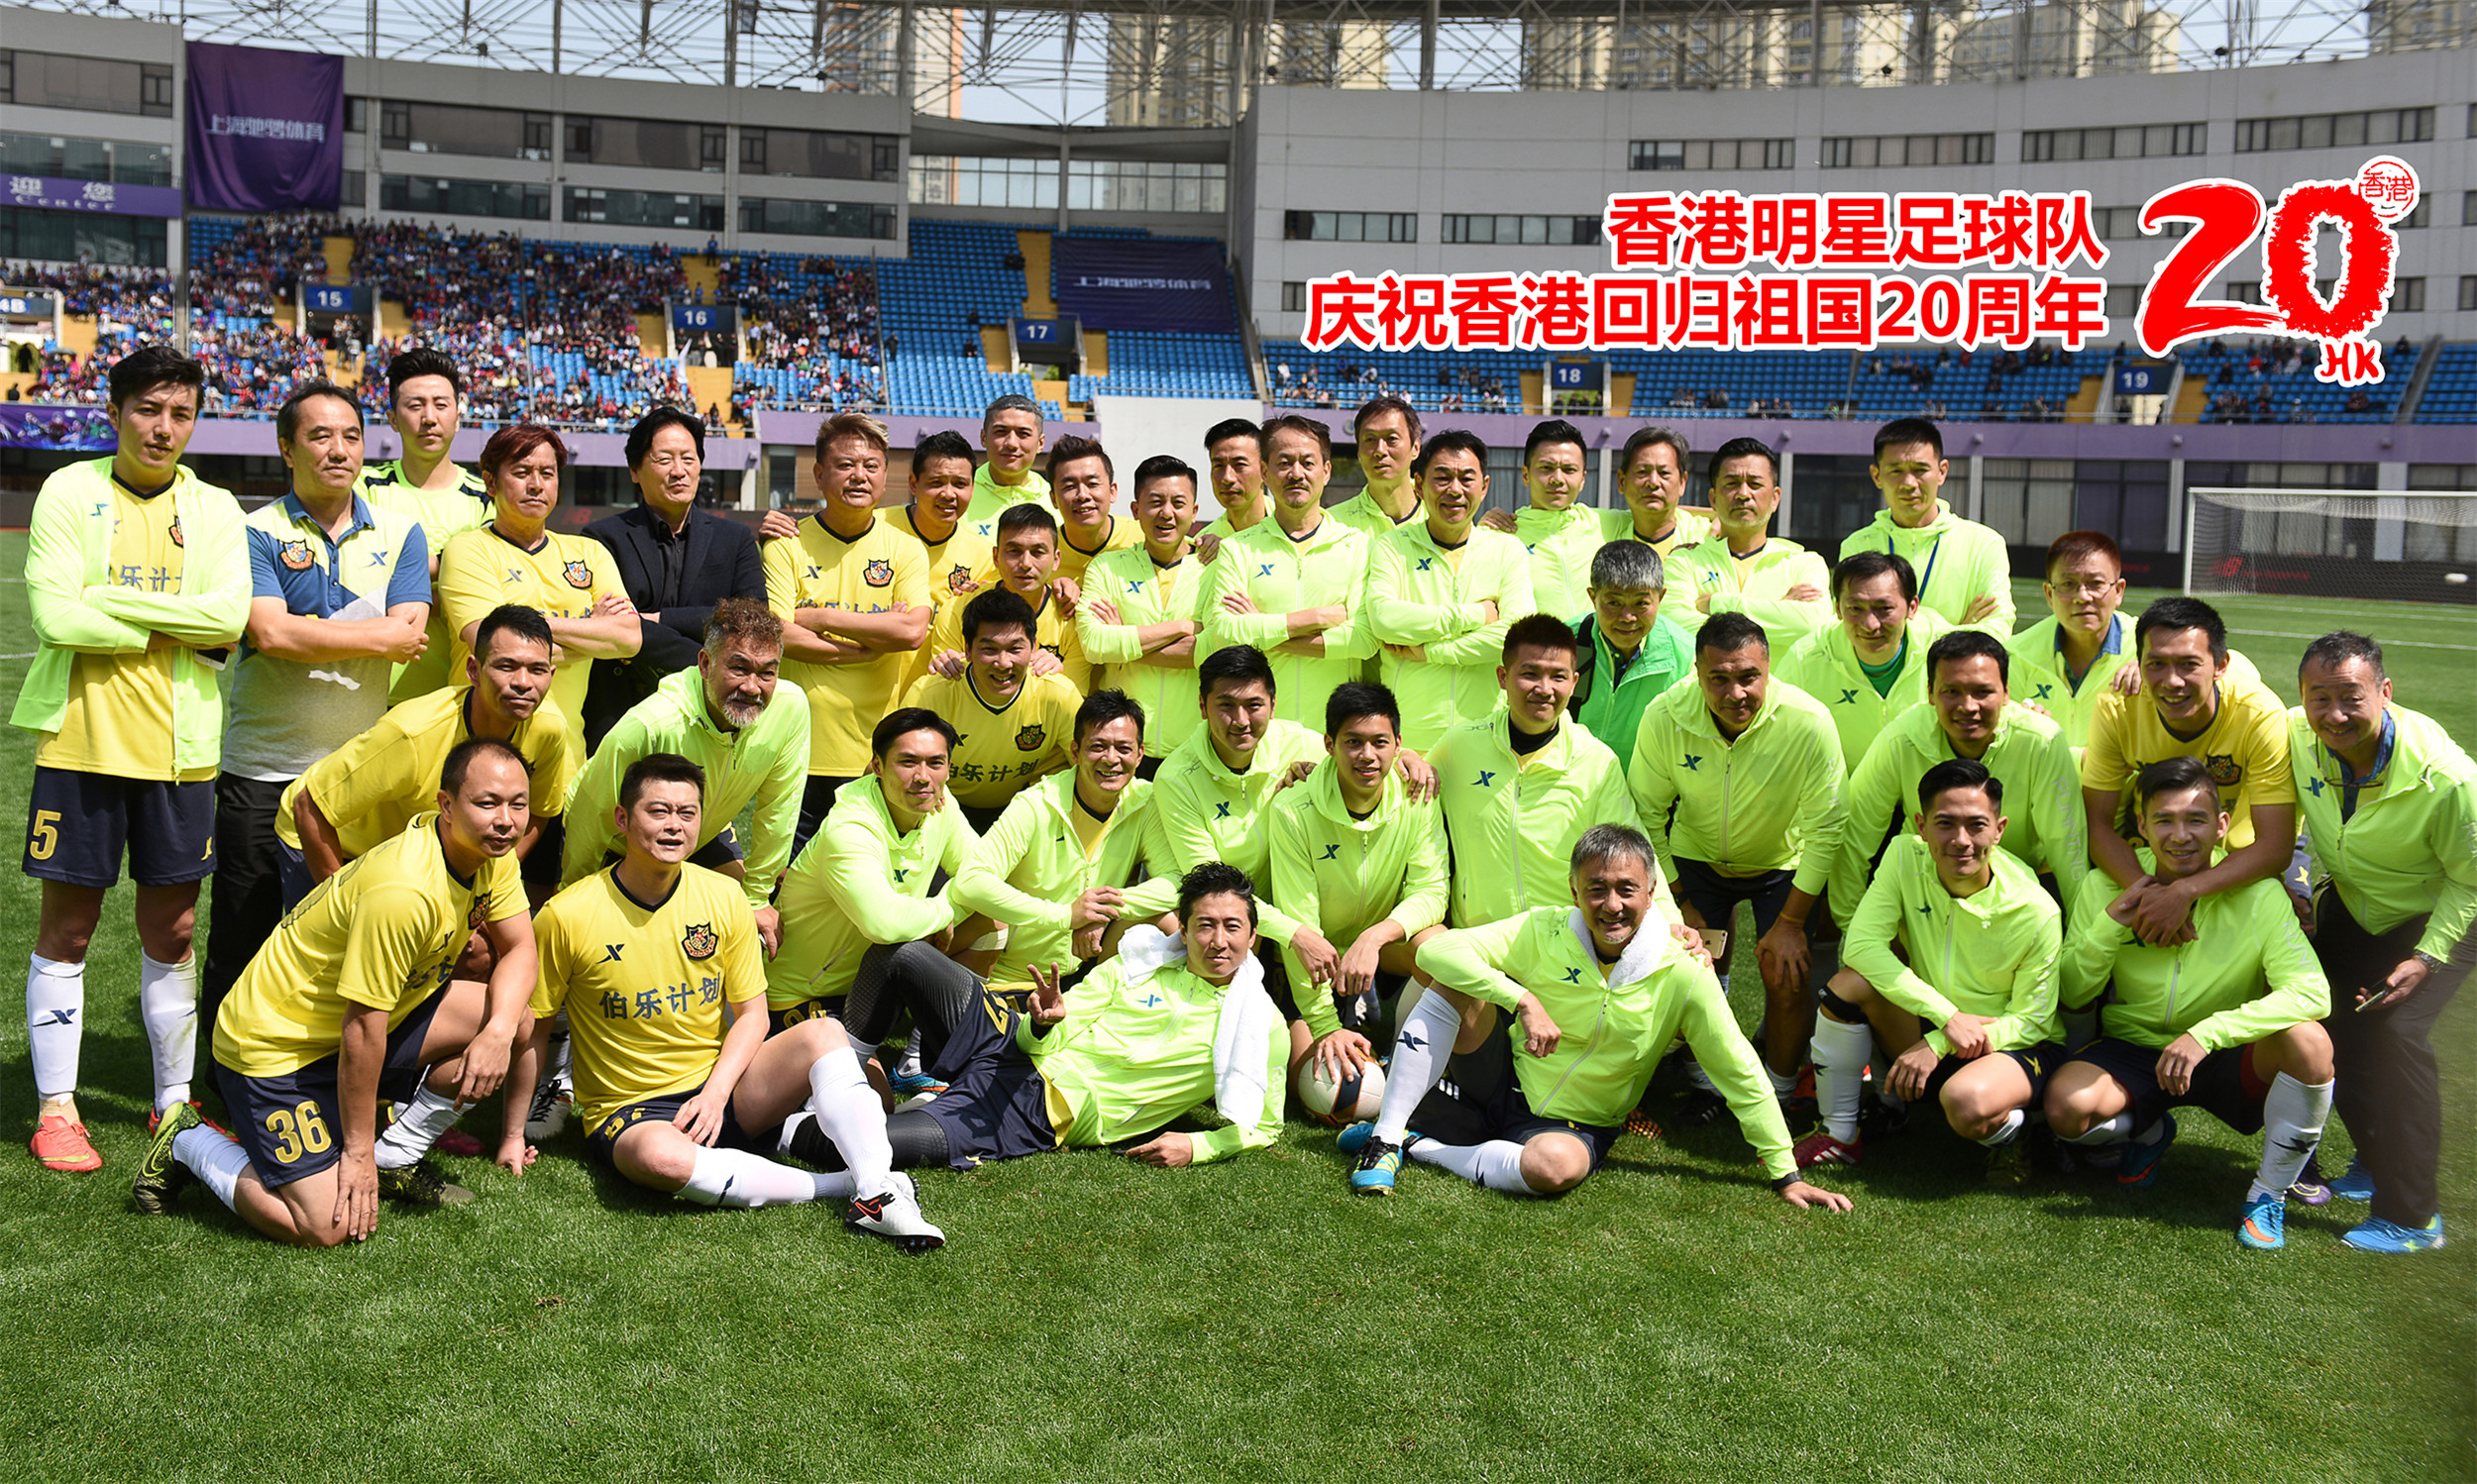 香港明星足球队庆祝香港回归祖国20周年!